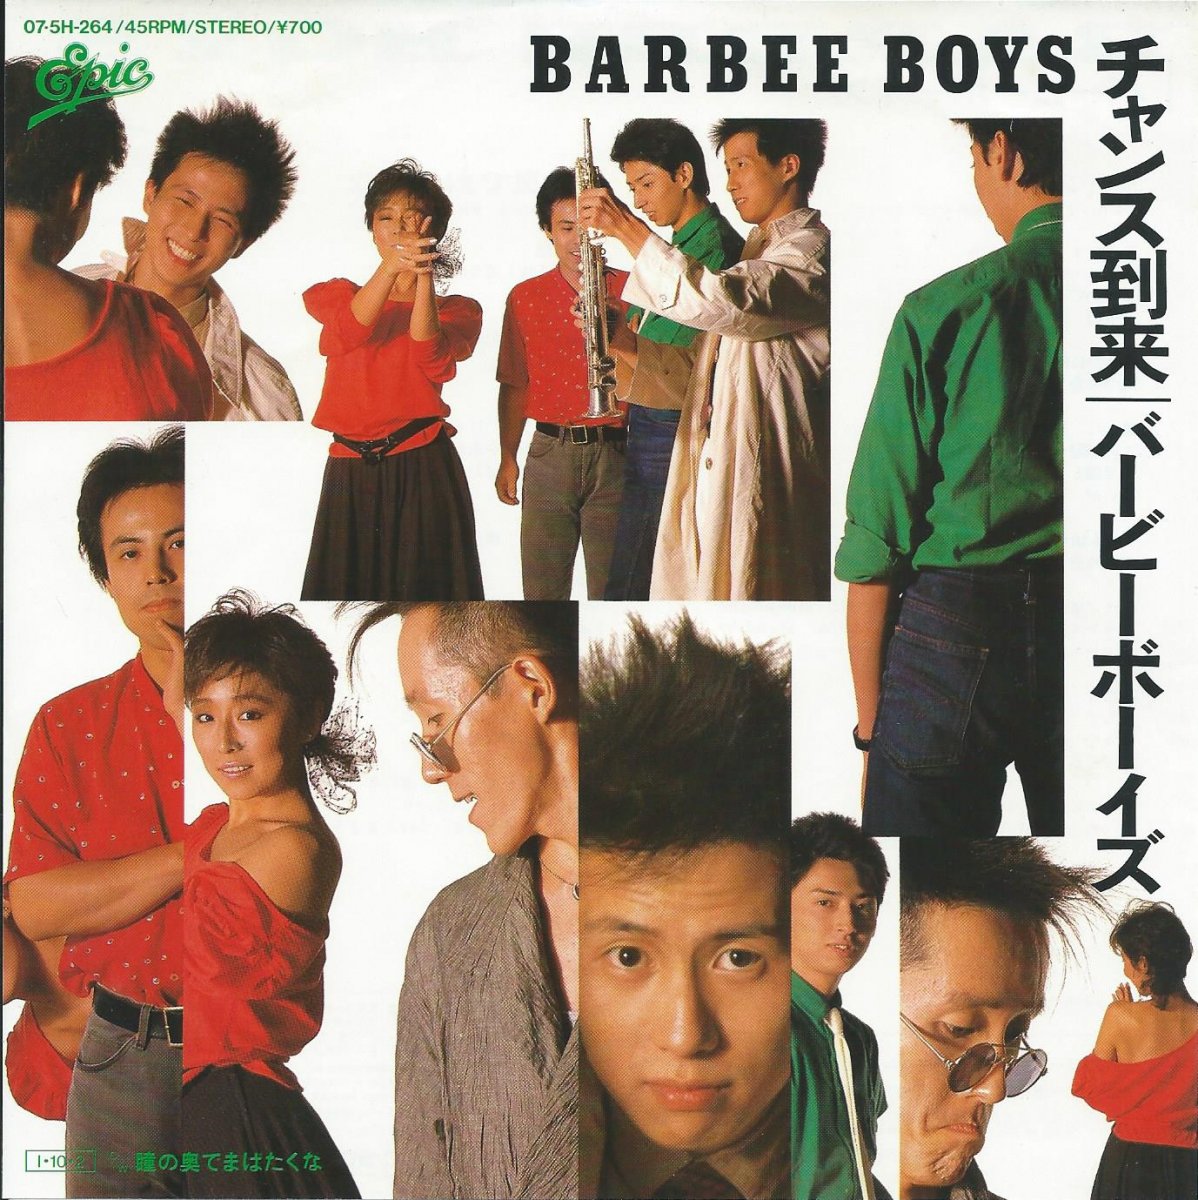 バービー・ボーイズ BARBEE BOYS / チャンス到来 / 瞳の奥でまばたくな (7) - HIP TANK RECORDS